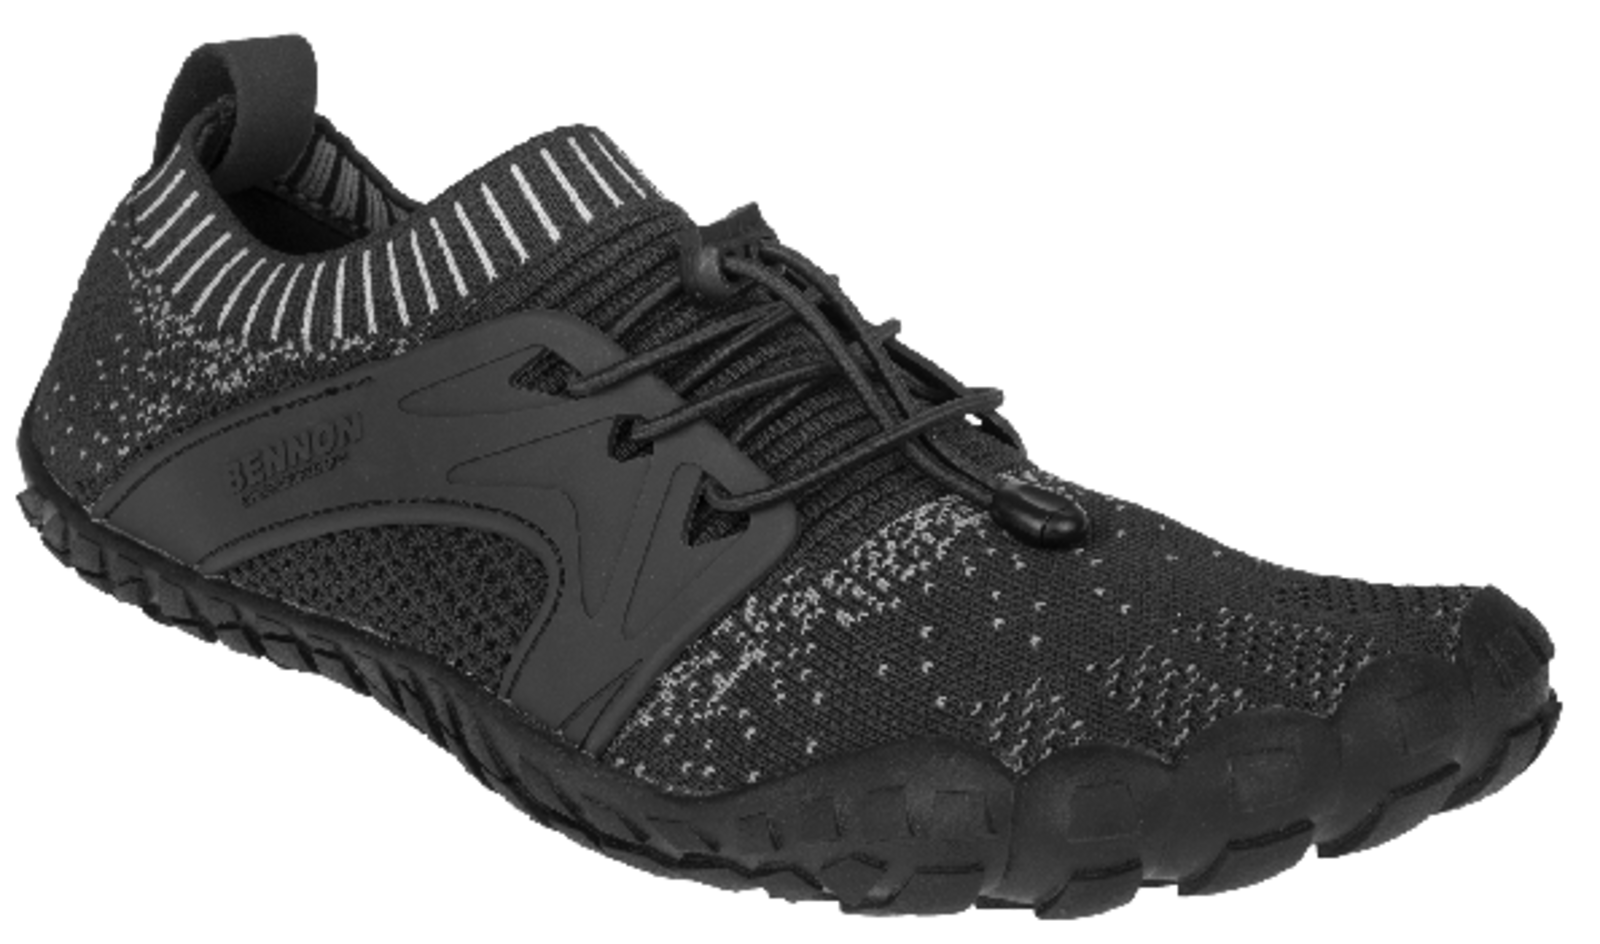 Voľnočasová barefoot obuv Bennon Bosky - veľkosť: 38, farba: čierna/biela